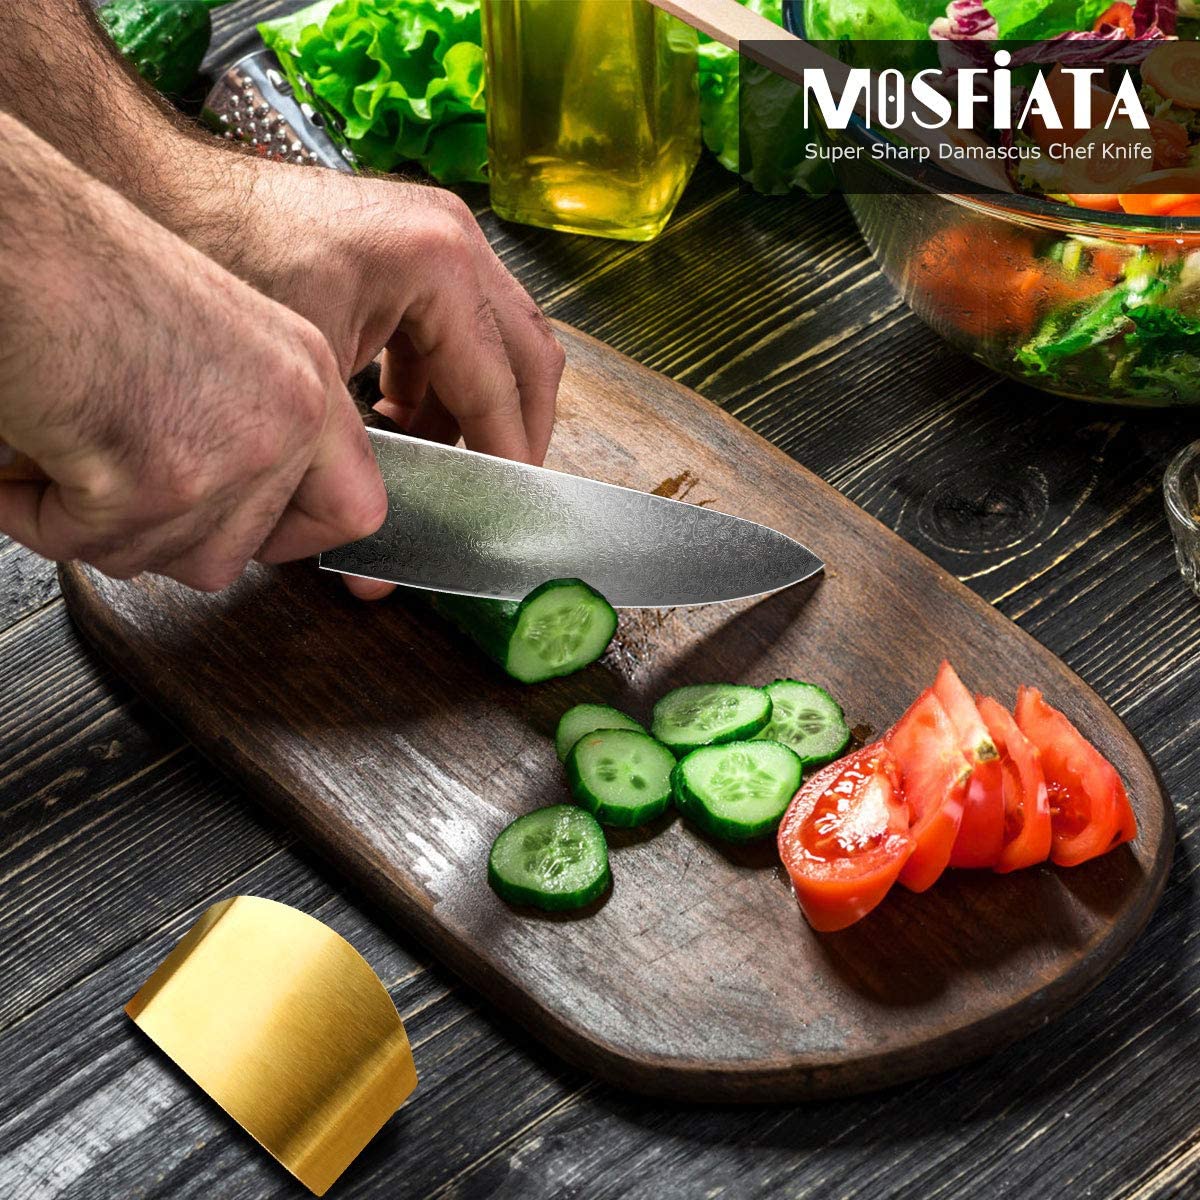 Chef Knives – mosfiata